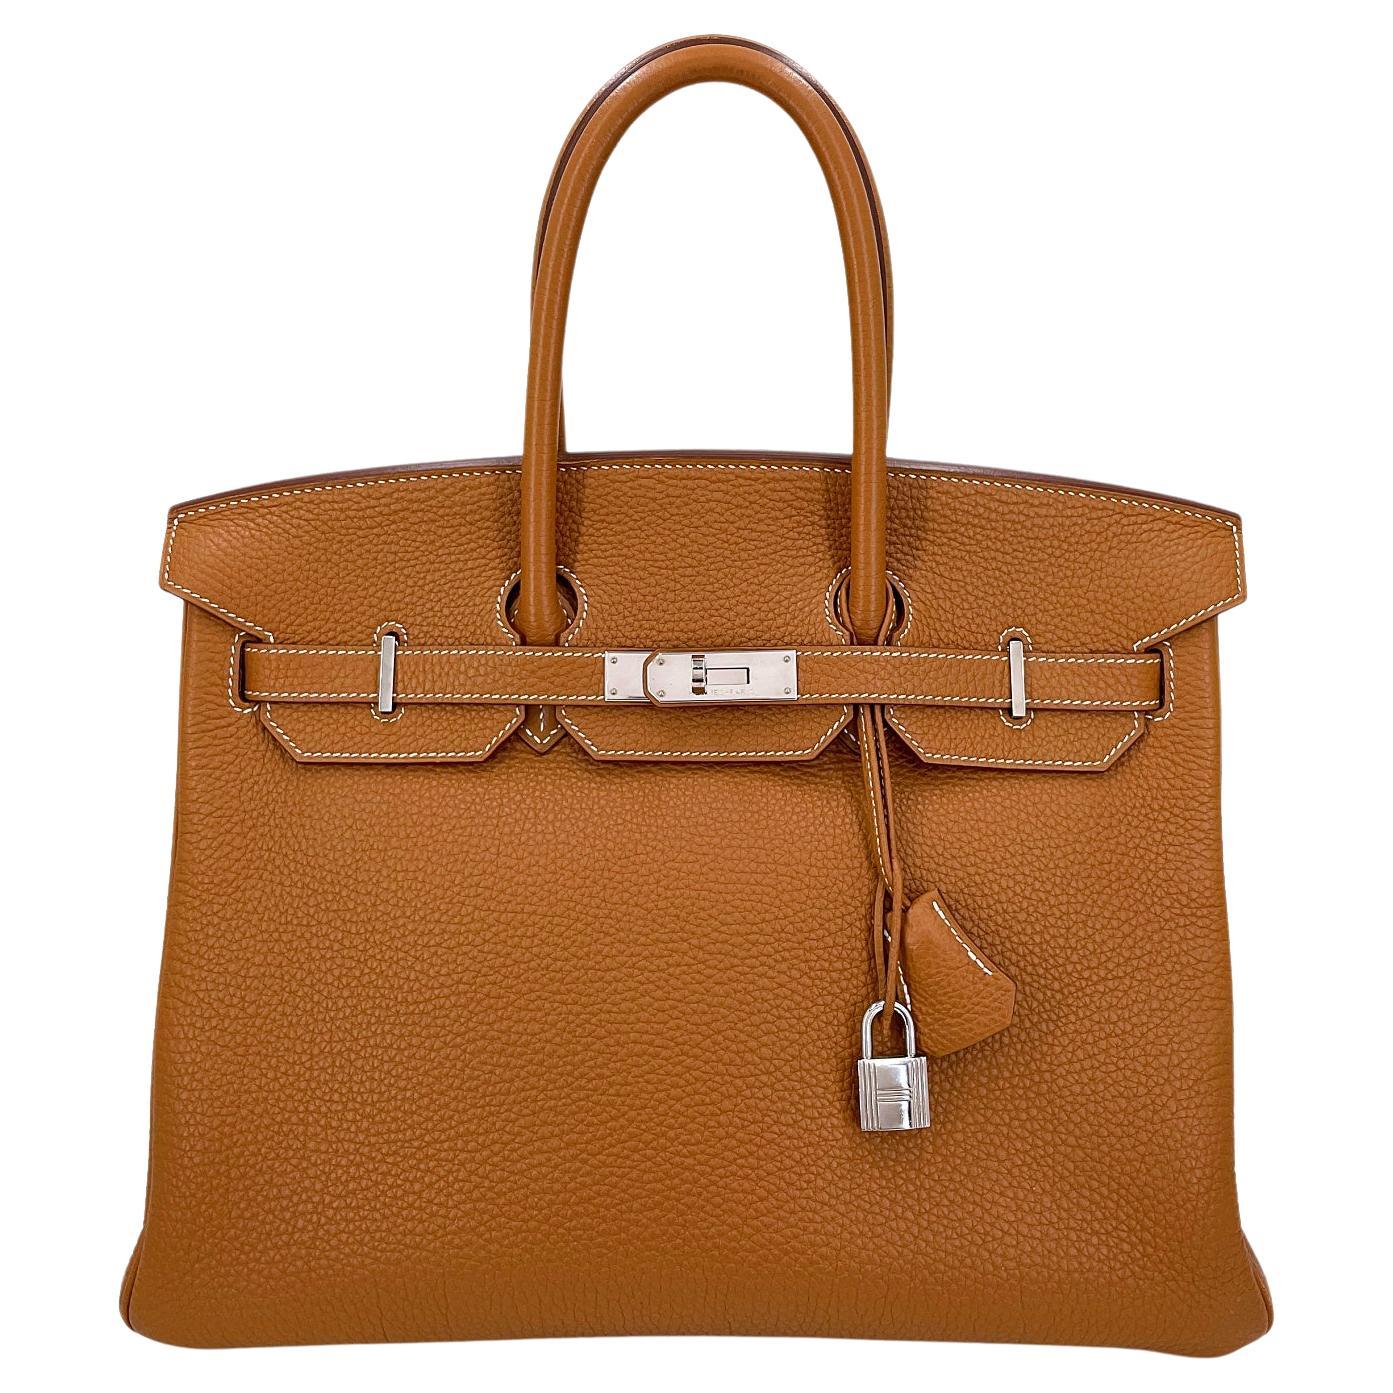 Hermès Gold Togo Birkin Tote Bag 35cm PHW Camel Brown 68060 For Sale